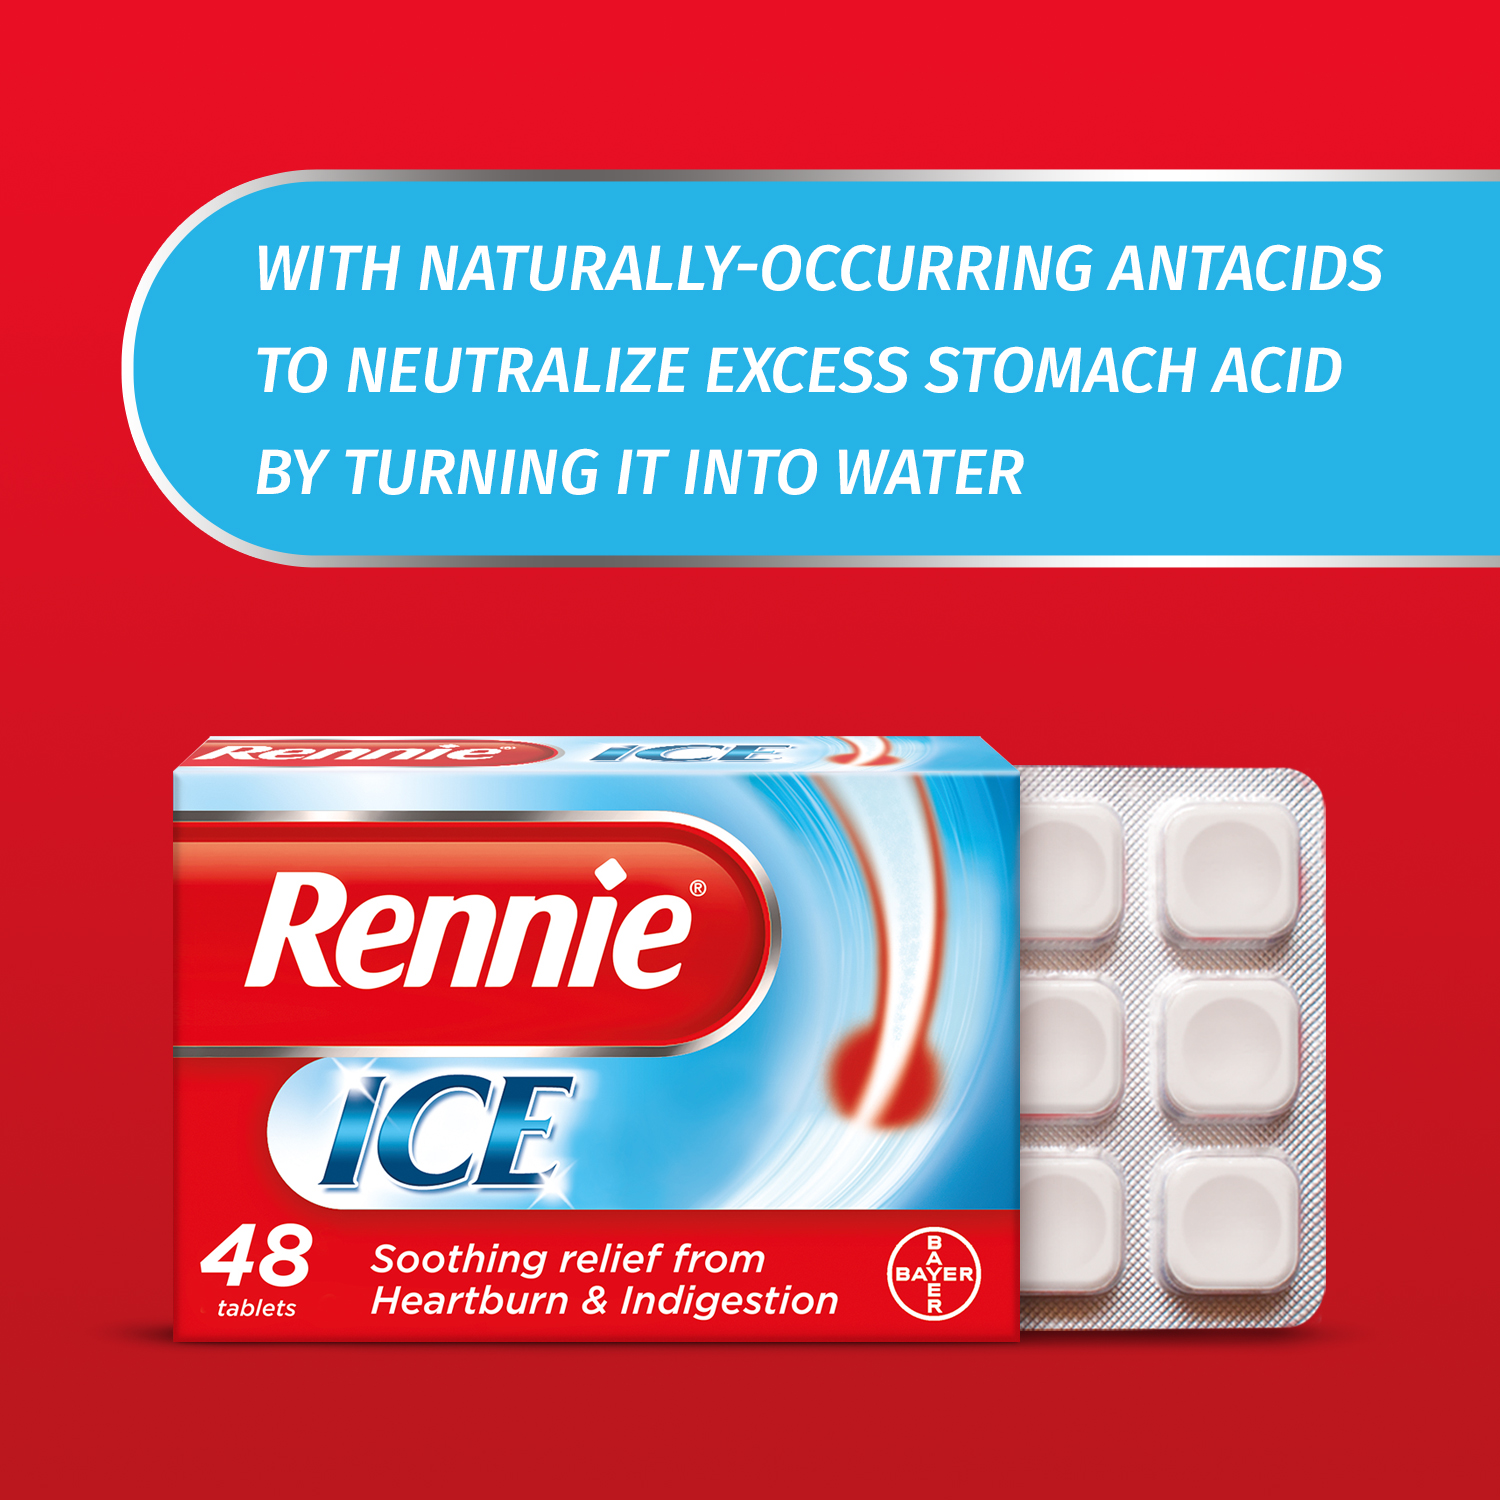 5.Bayer_eCommerce_Rennie_Ice_Ingredients